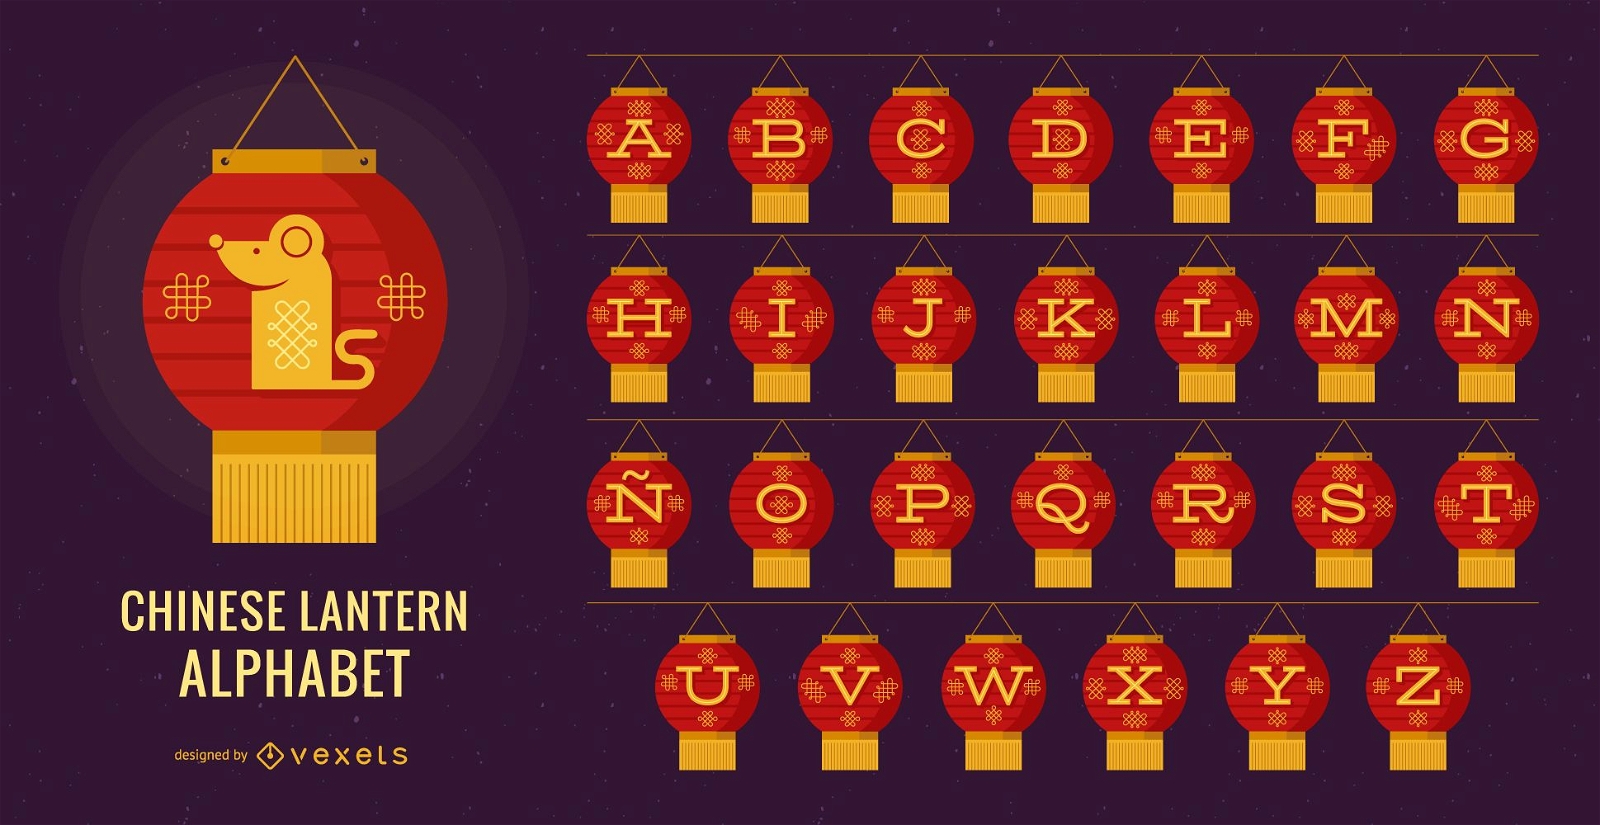 Chinesisches Laternen-Alphabet-Buchstabenset